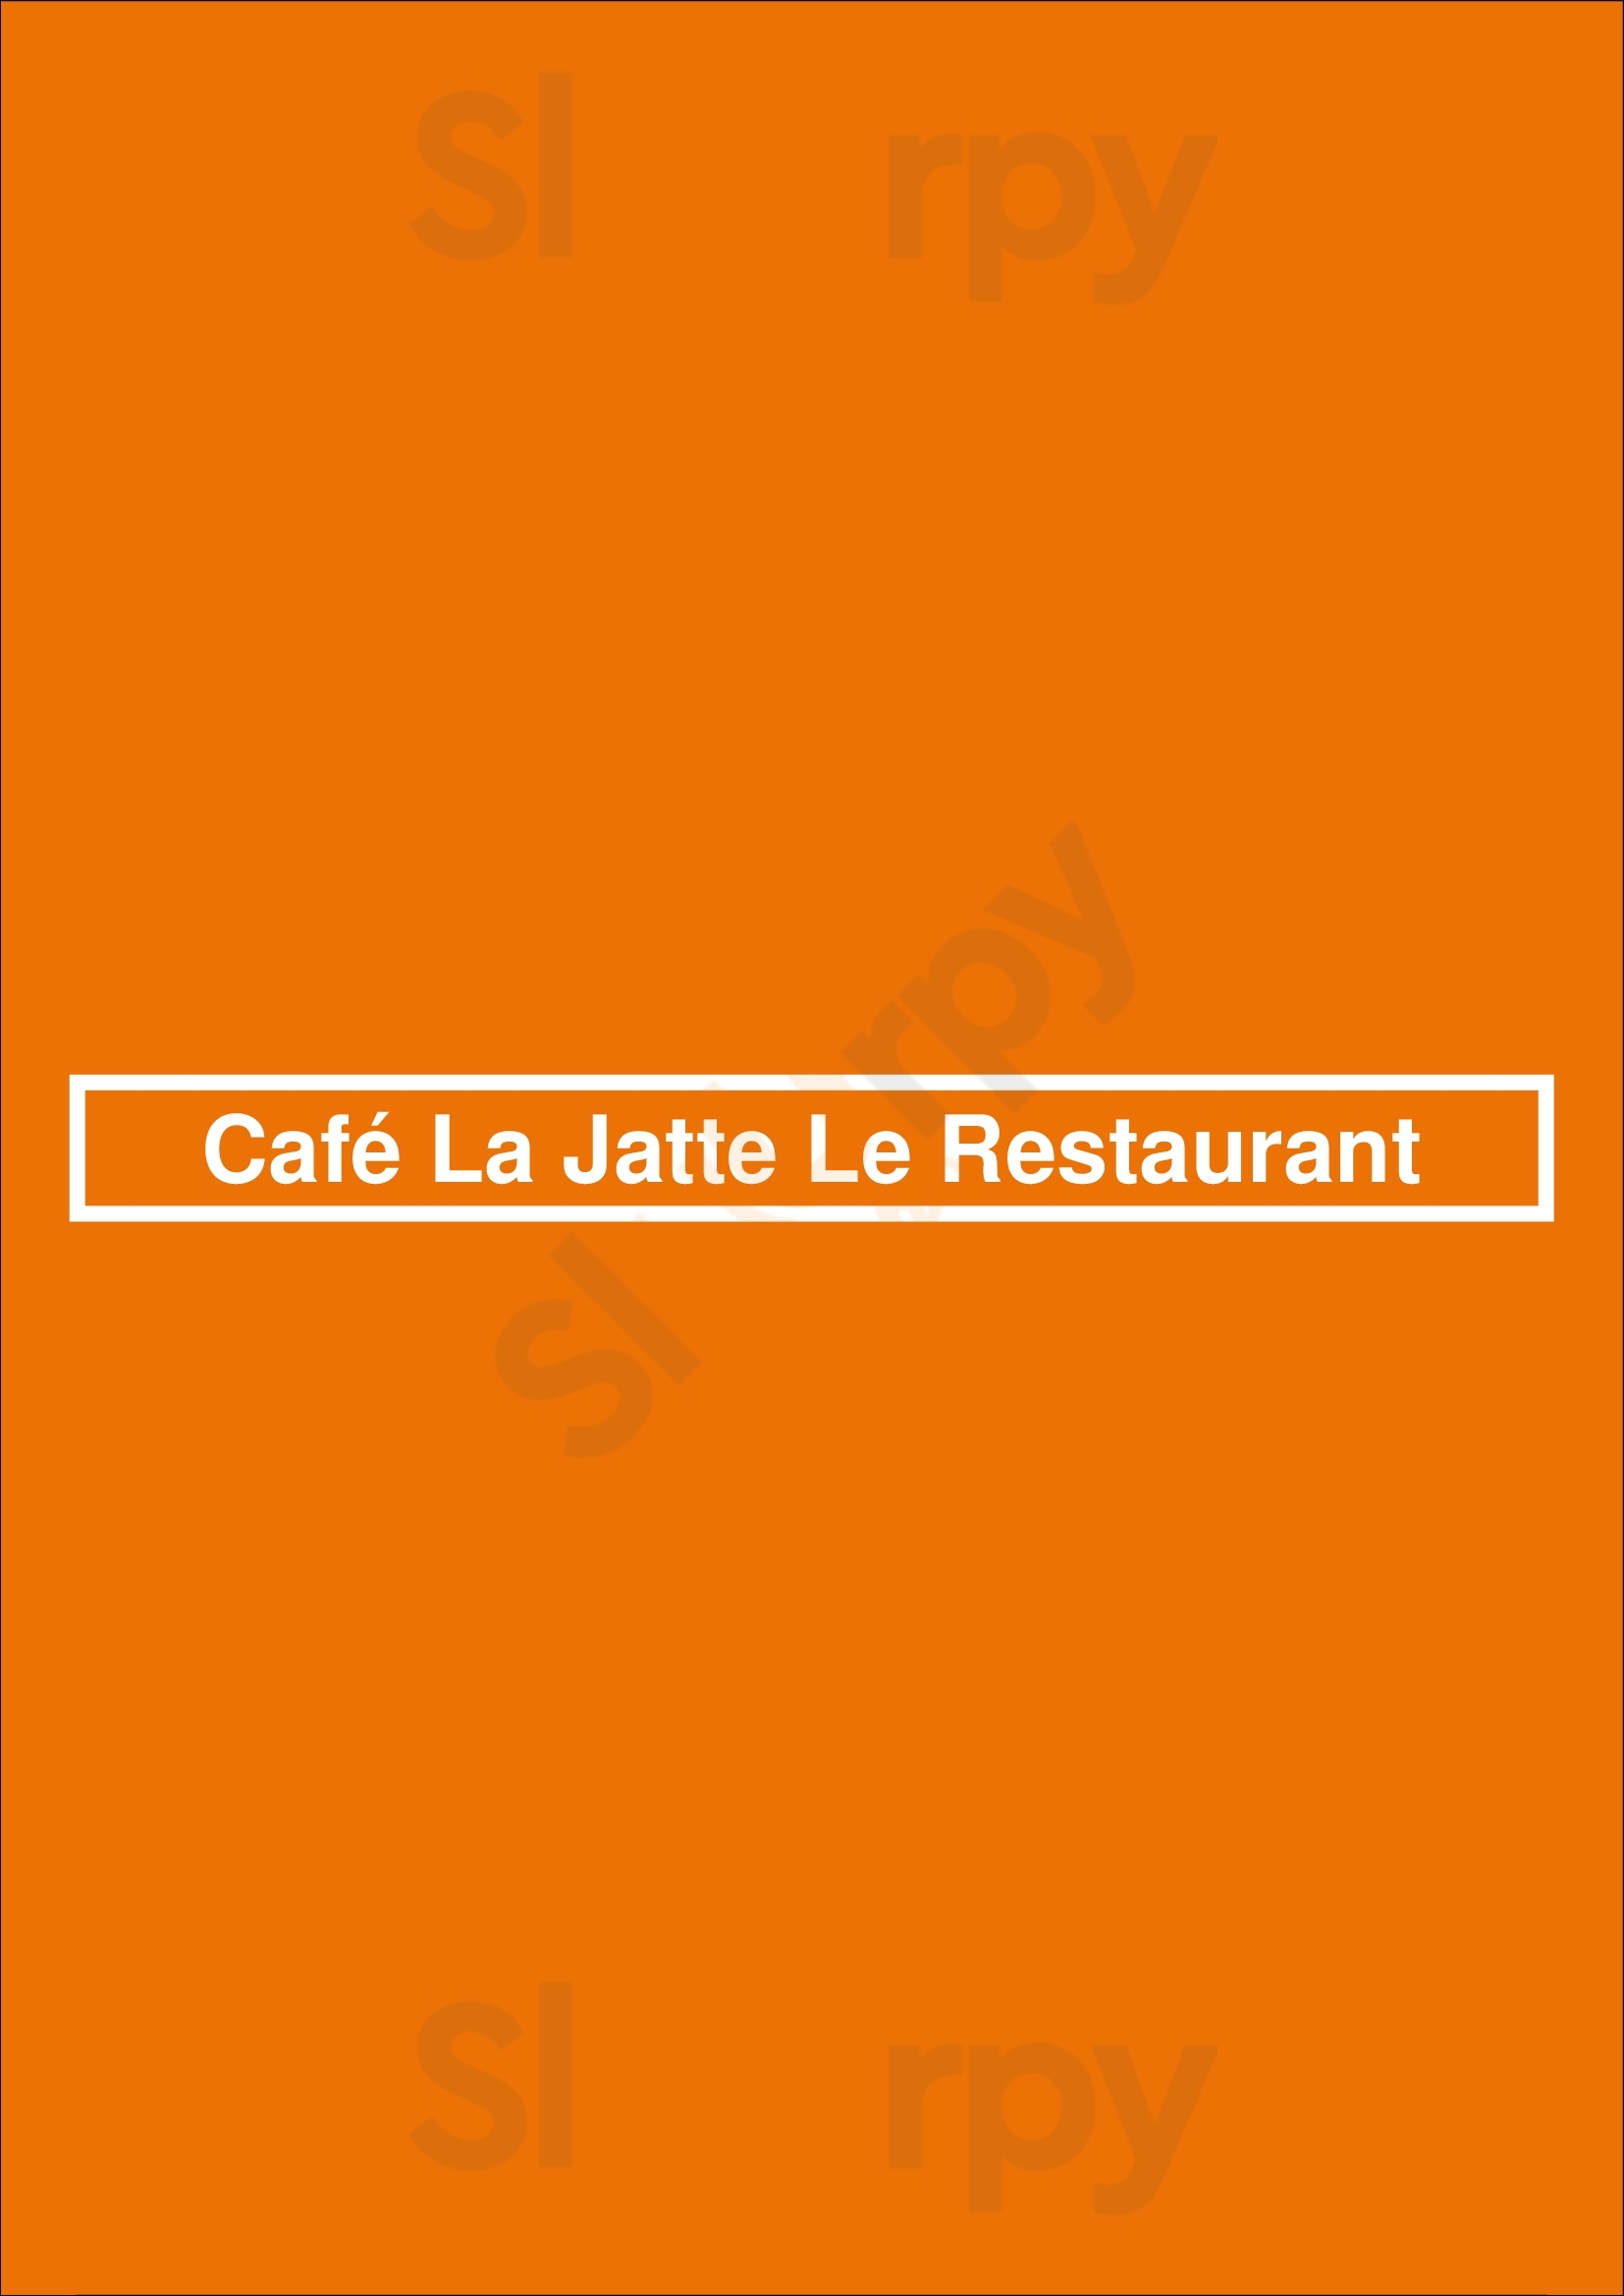 Café La Jatte Le Restaurant Neuilly-sur-Seine Menu - 1